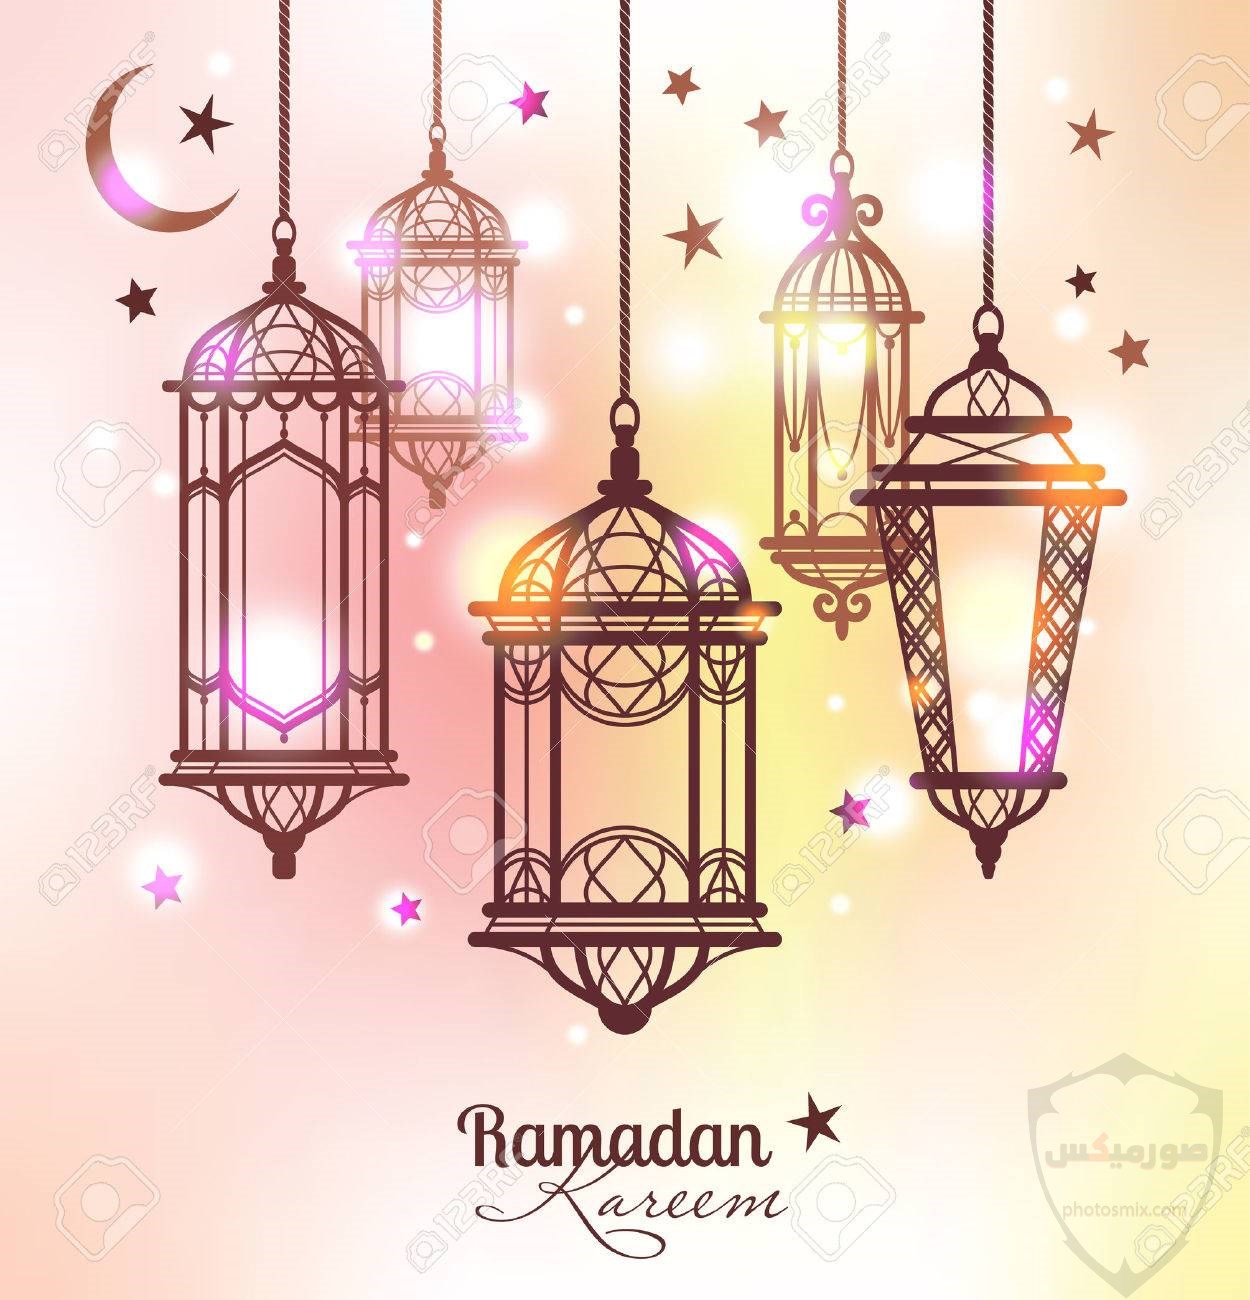 أدعية شهر رمضان 2020 مكتوبة “حصن المسلم” 26